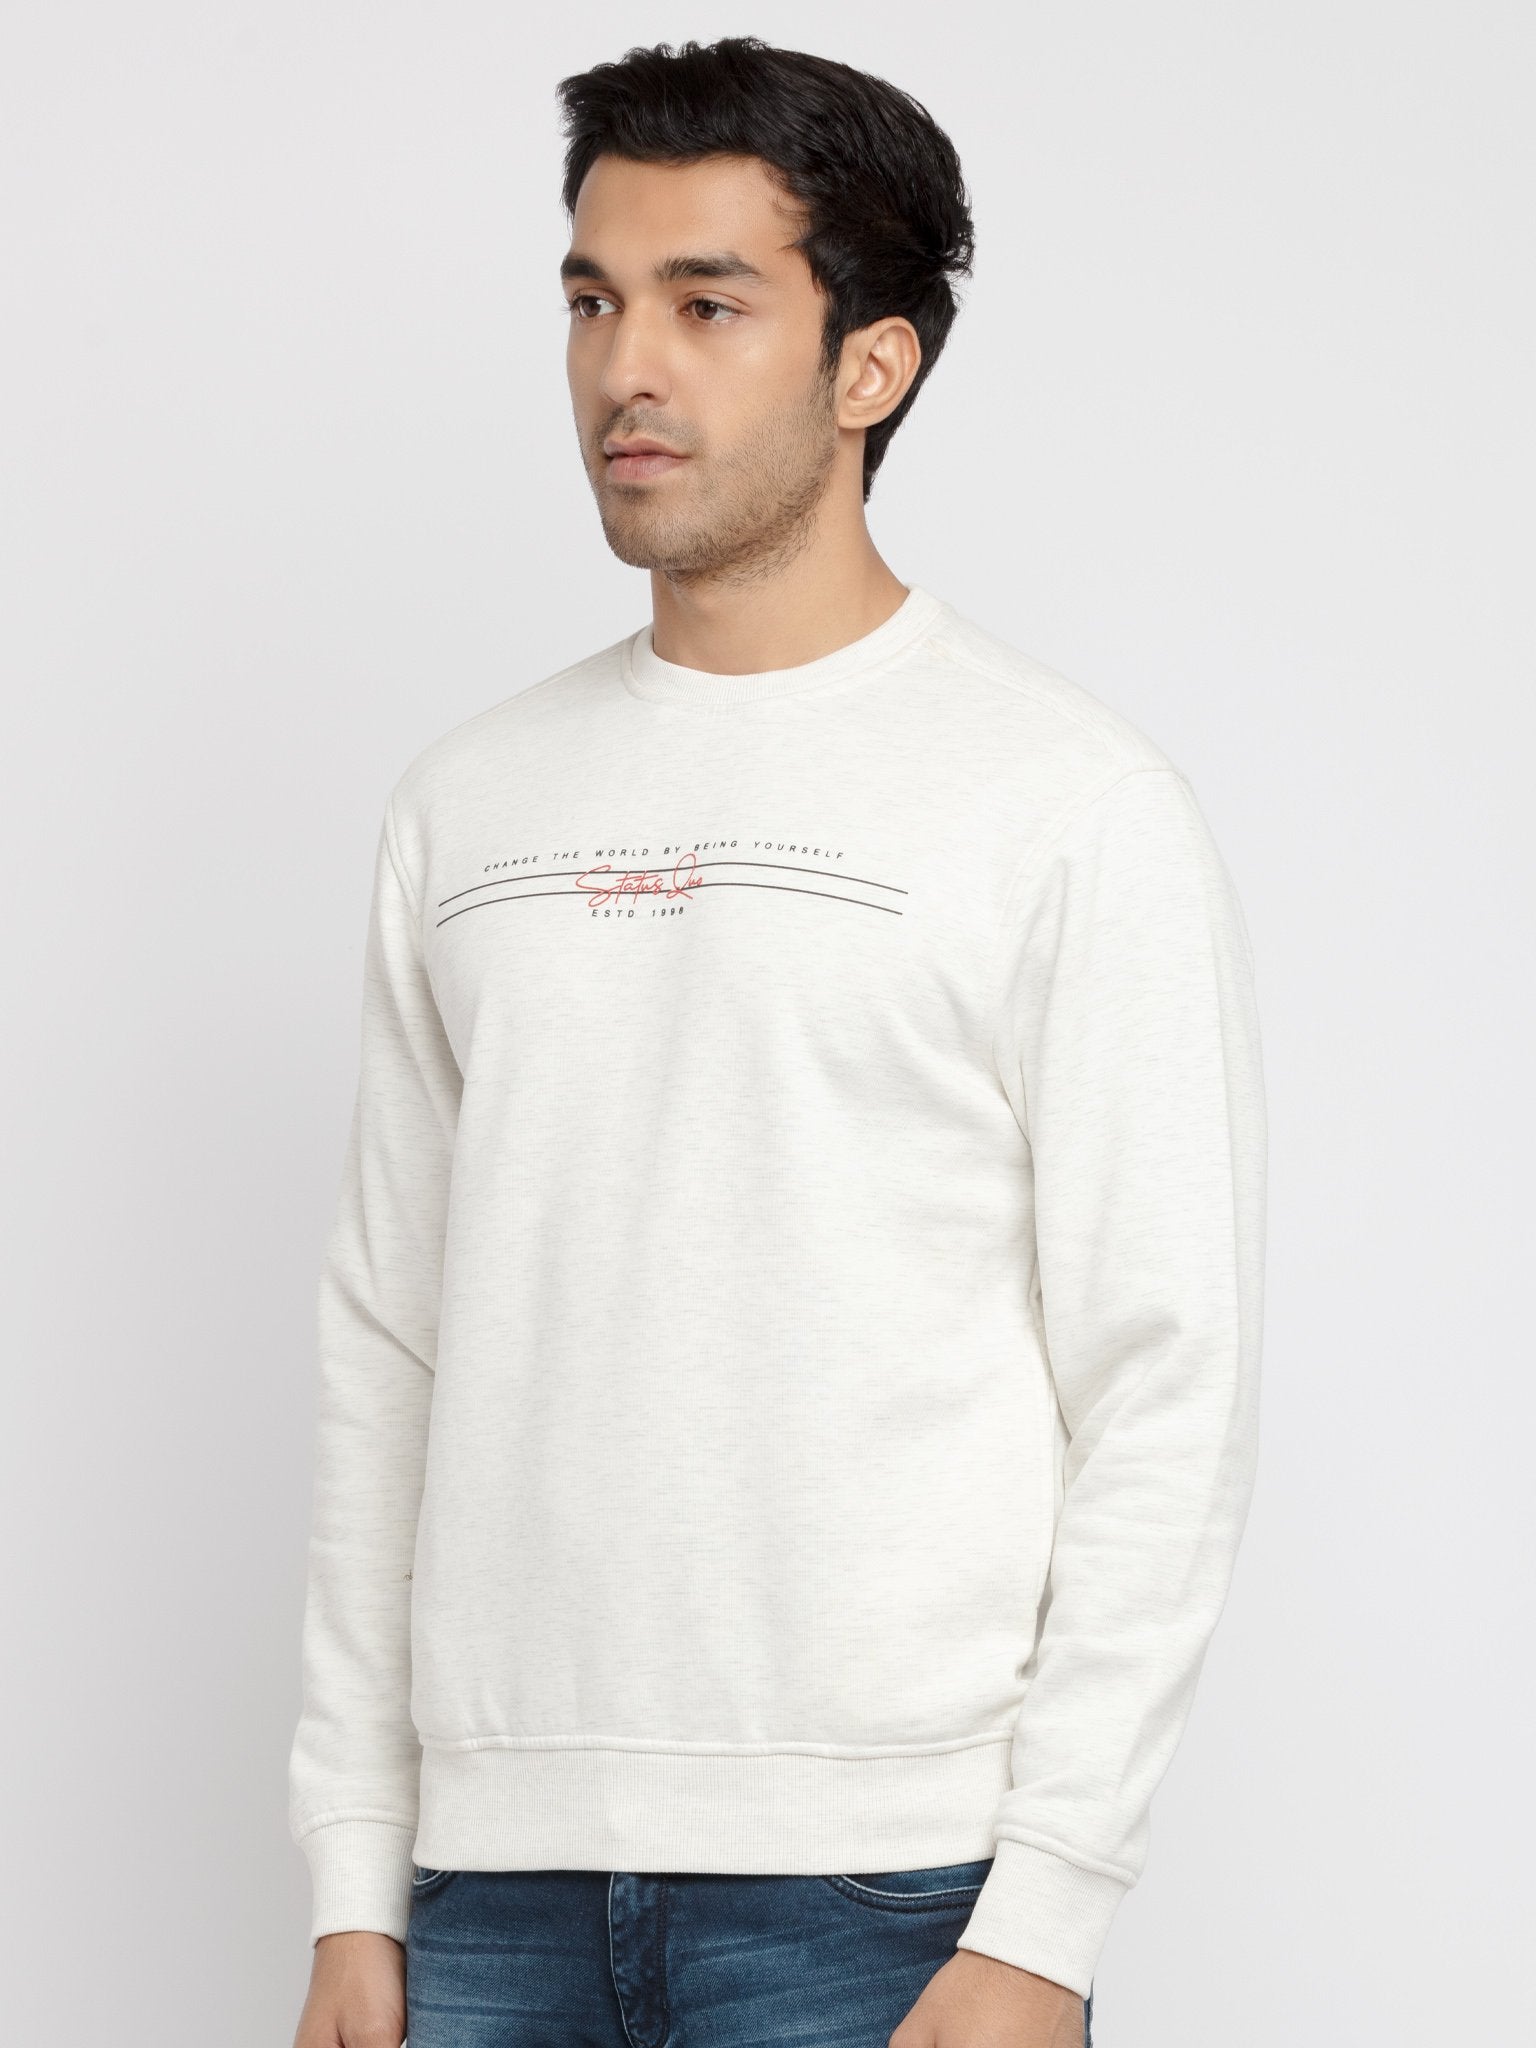 3xl sweatshirts